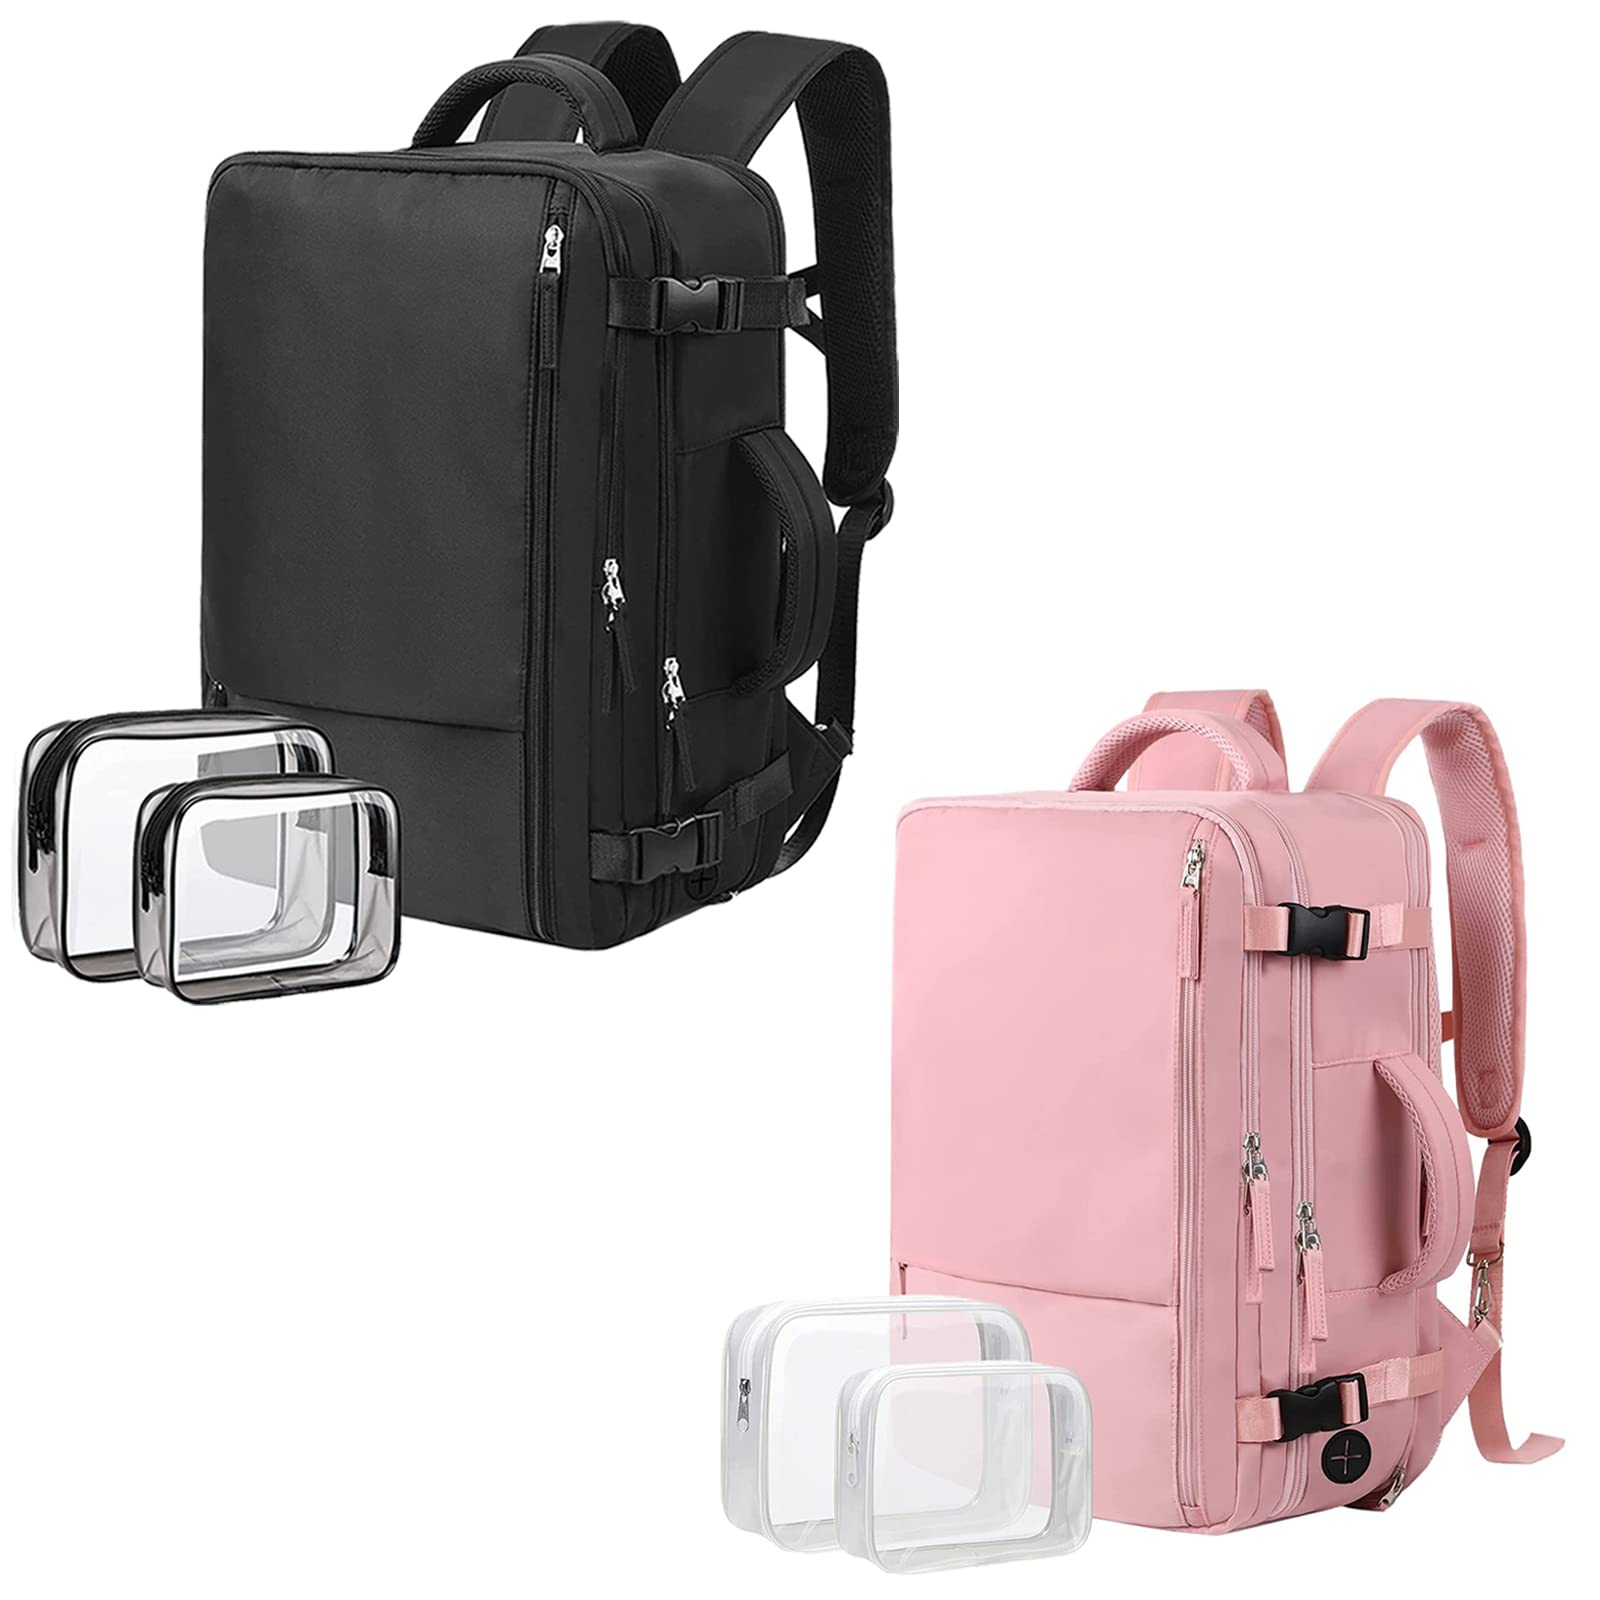 送料無料Extra Large Travel Backpack 2 Pieces Black Pink as Person Item Flight Approved 40L Carry On Backpack 17 Inc